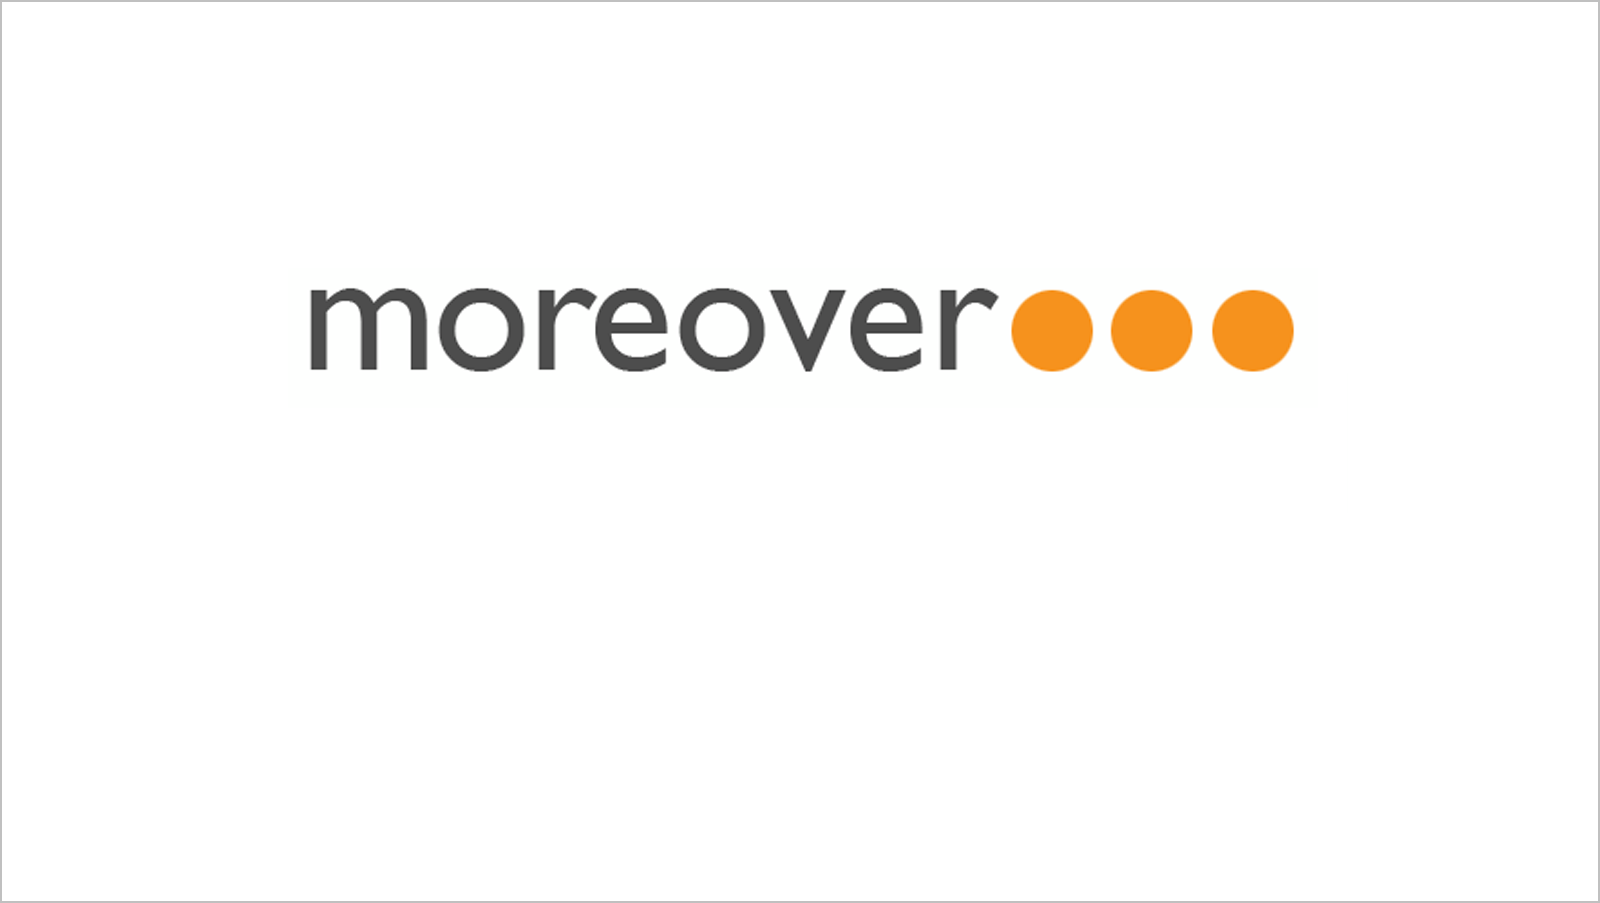 Companies: Moreover.com